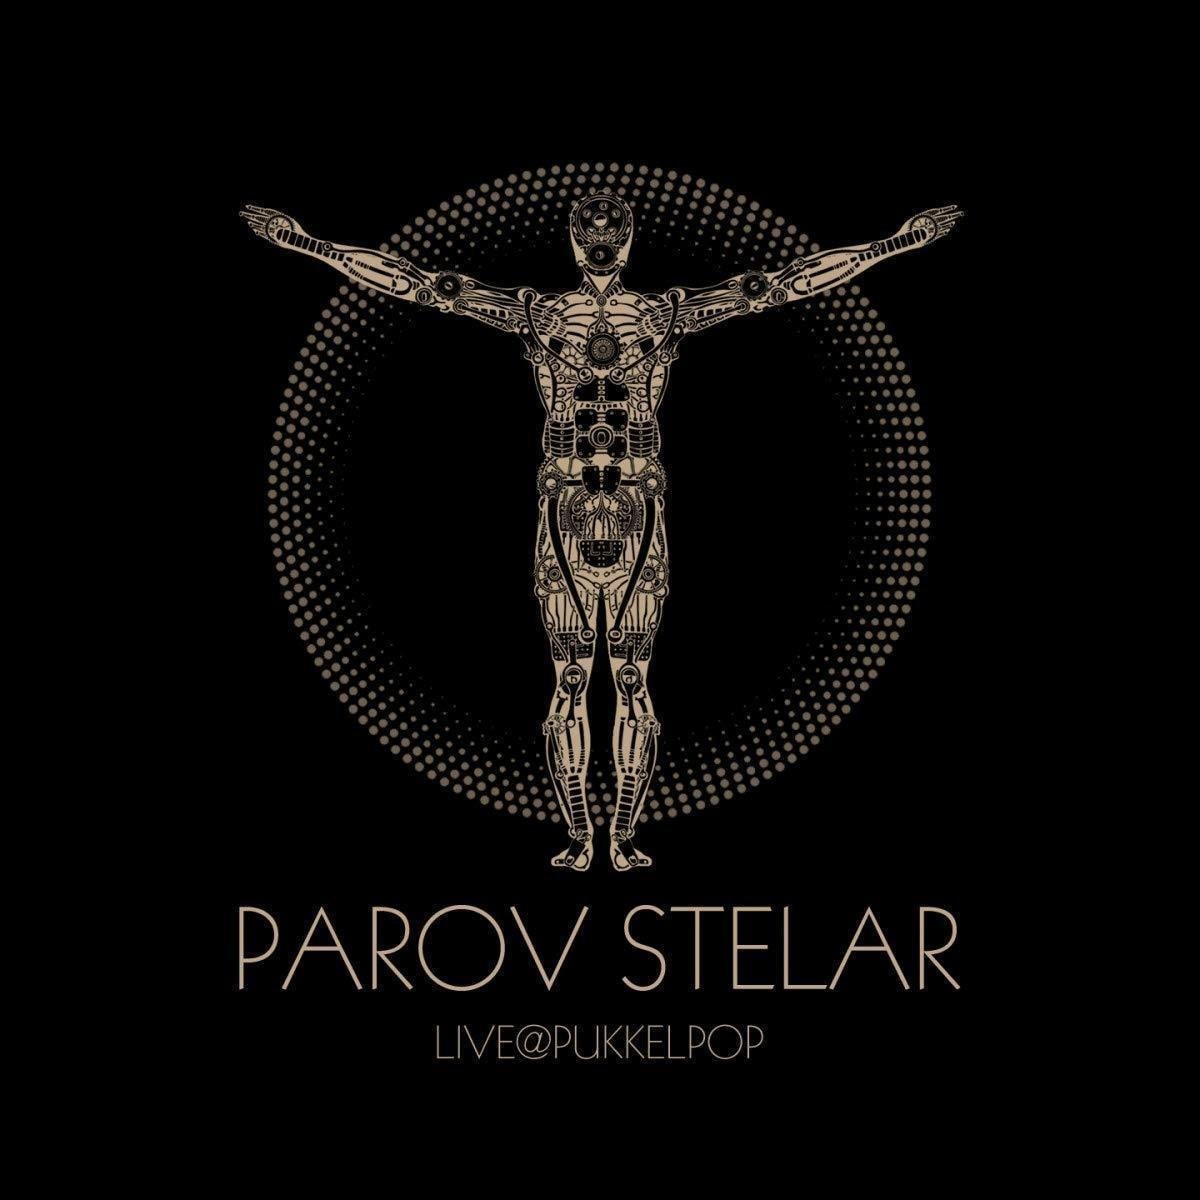 Disque vinyle Parov Stelar Live @ Pukkelpop (2 LP + DVD)